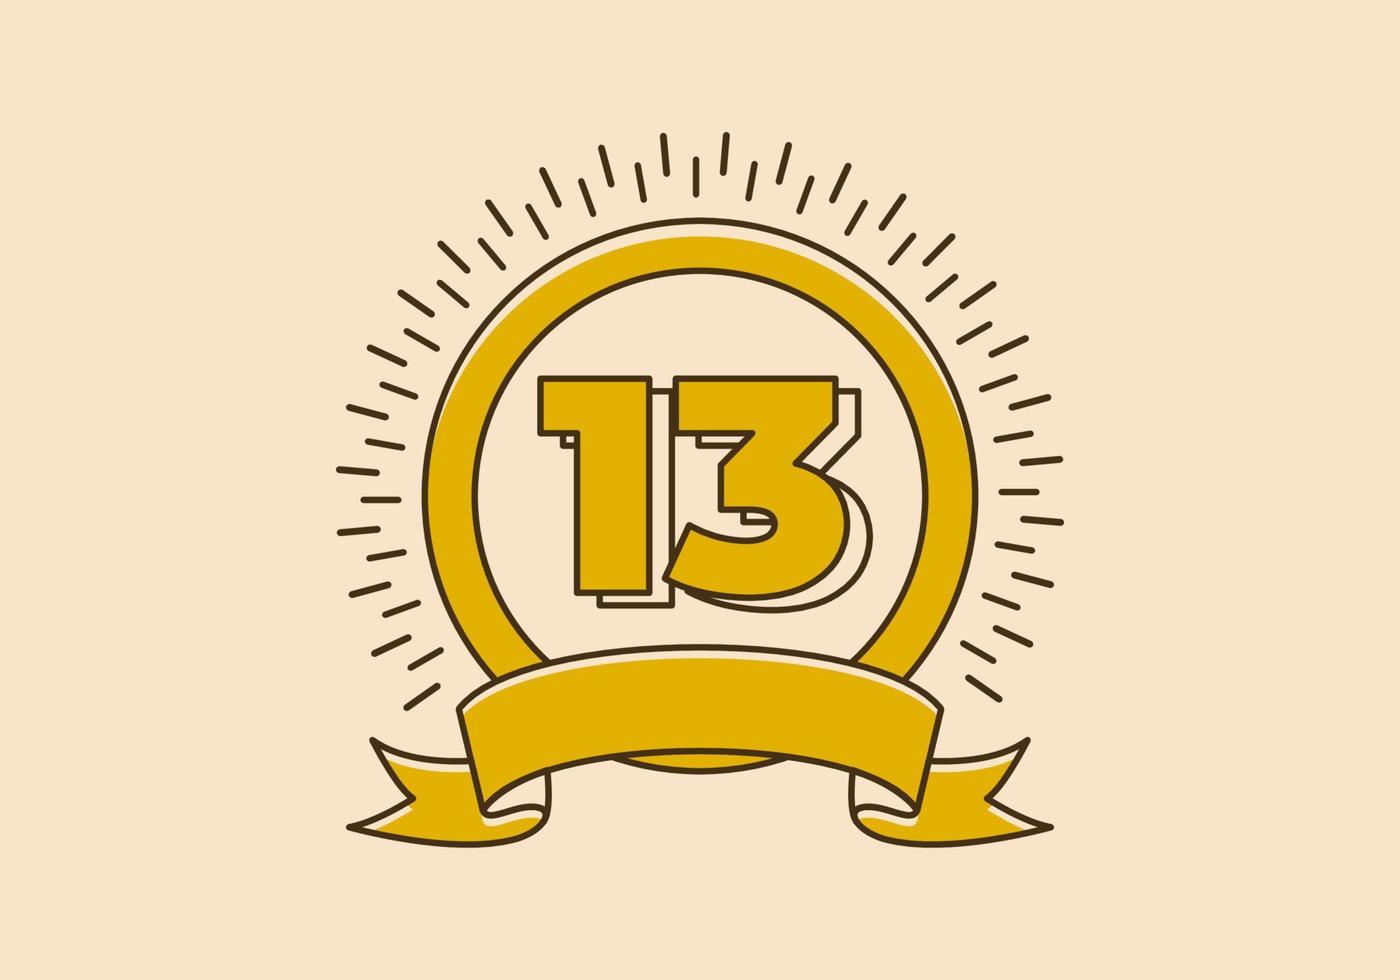 insigne de cercle jaune vintage avec le numéro 13 dessus vecteur